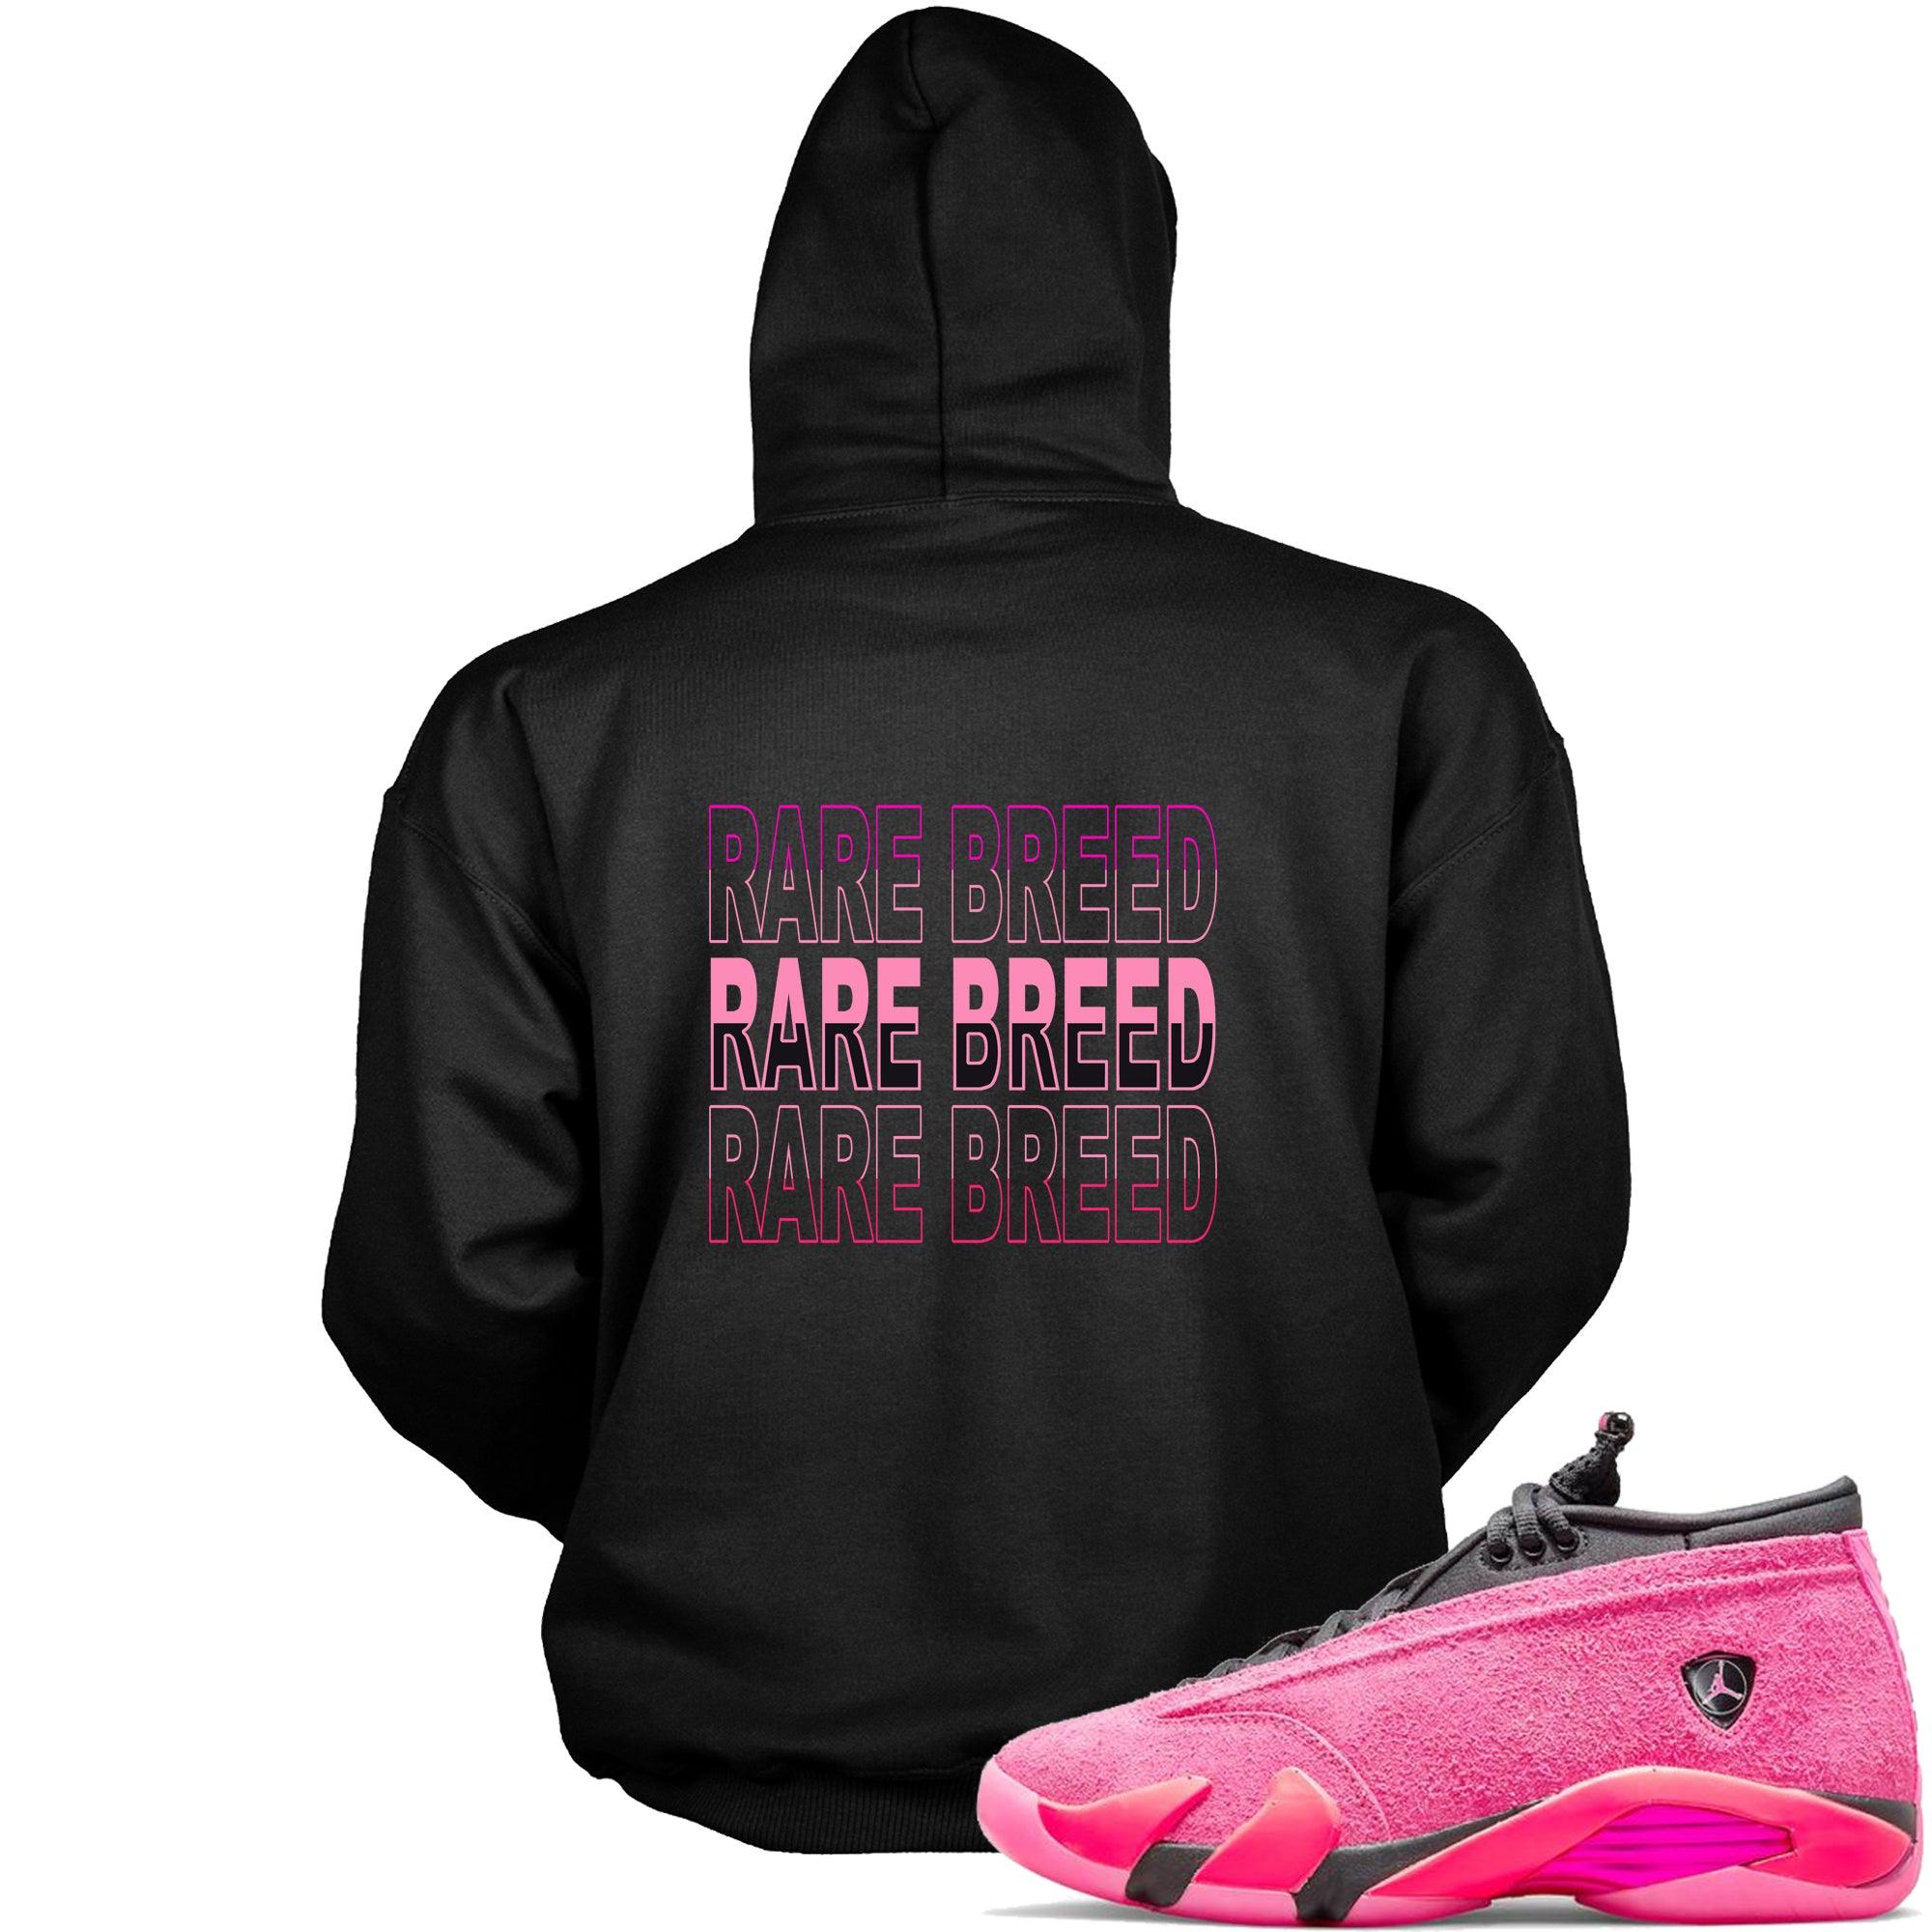 Black Rare Breed Hoodie Jordan 14s Low Shocking Pink photo